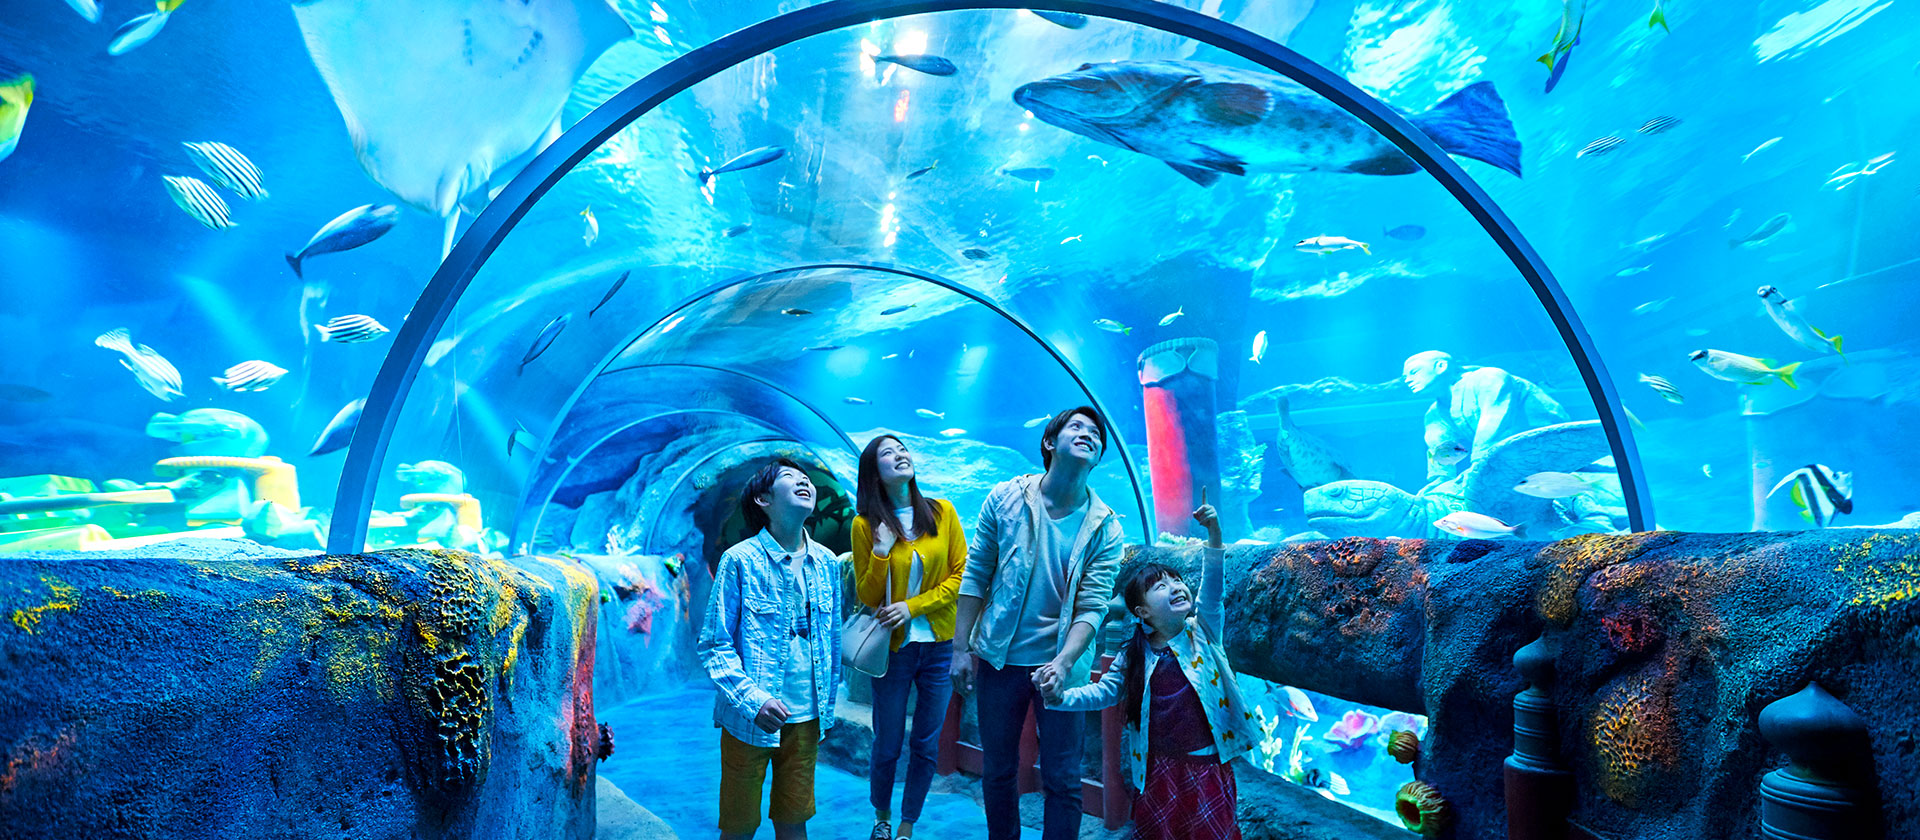 Explore the aquarium